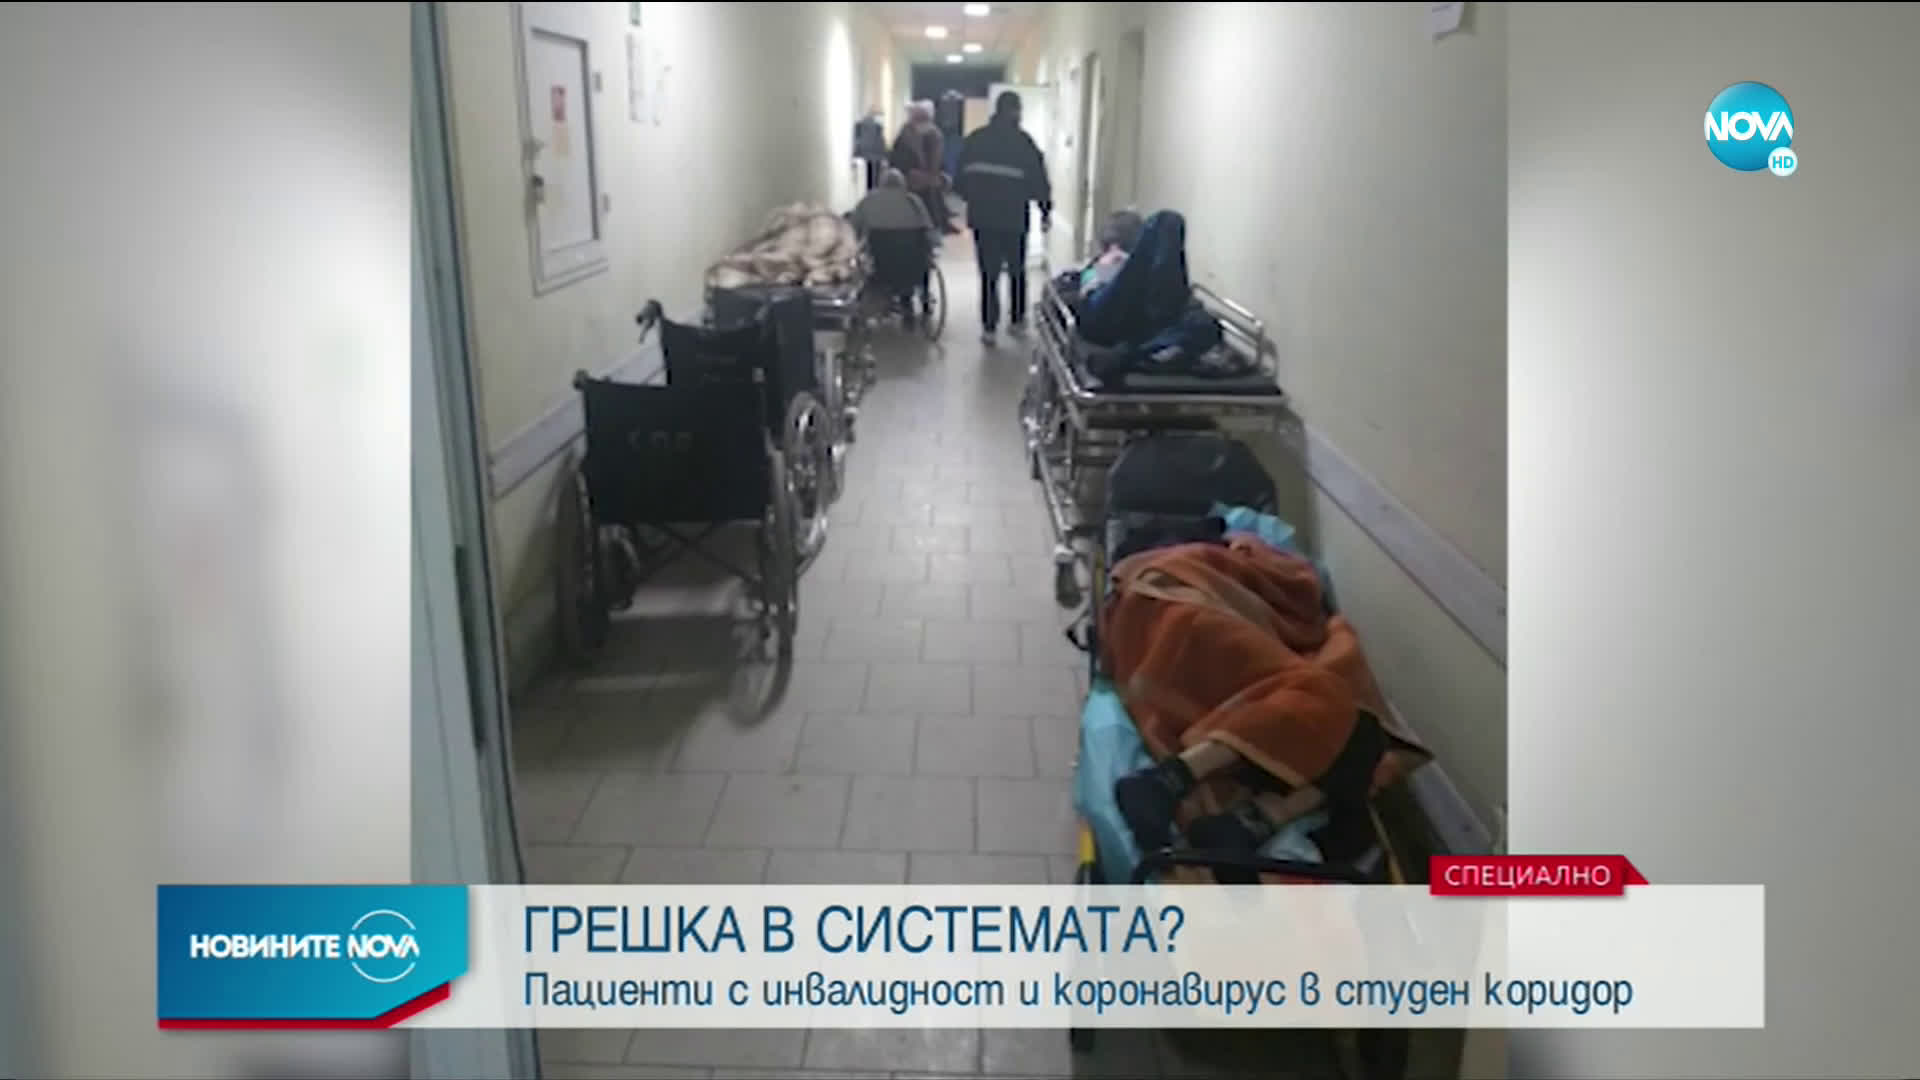 АБСУРД В ПЕРНИК: Пациенти с инвалидност и коронавирус оставени в студен коридор